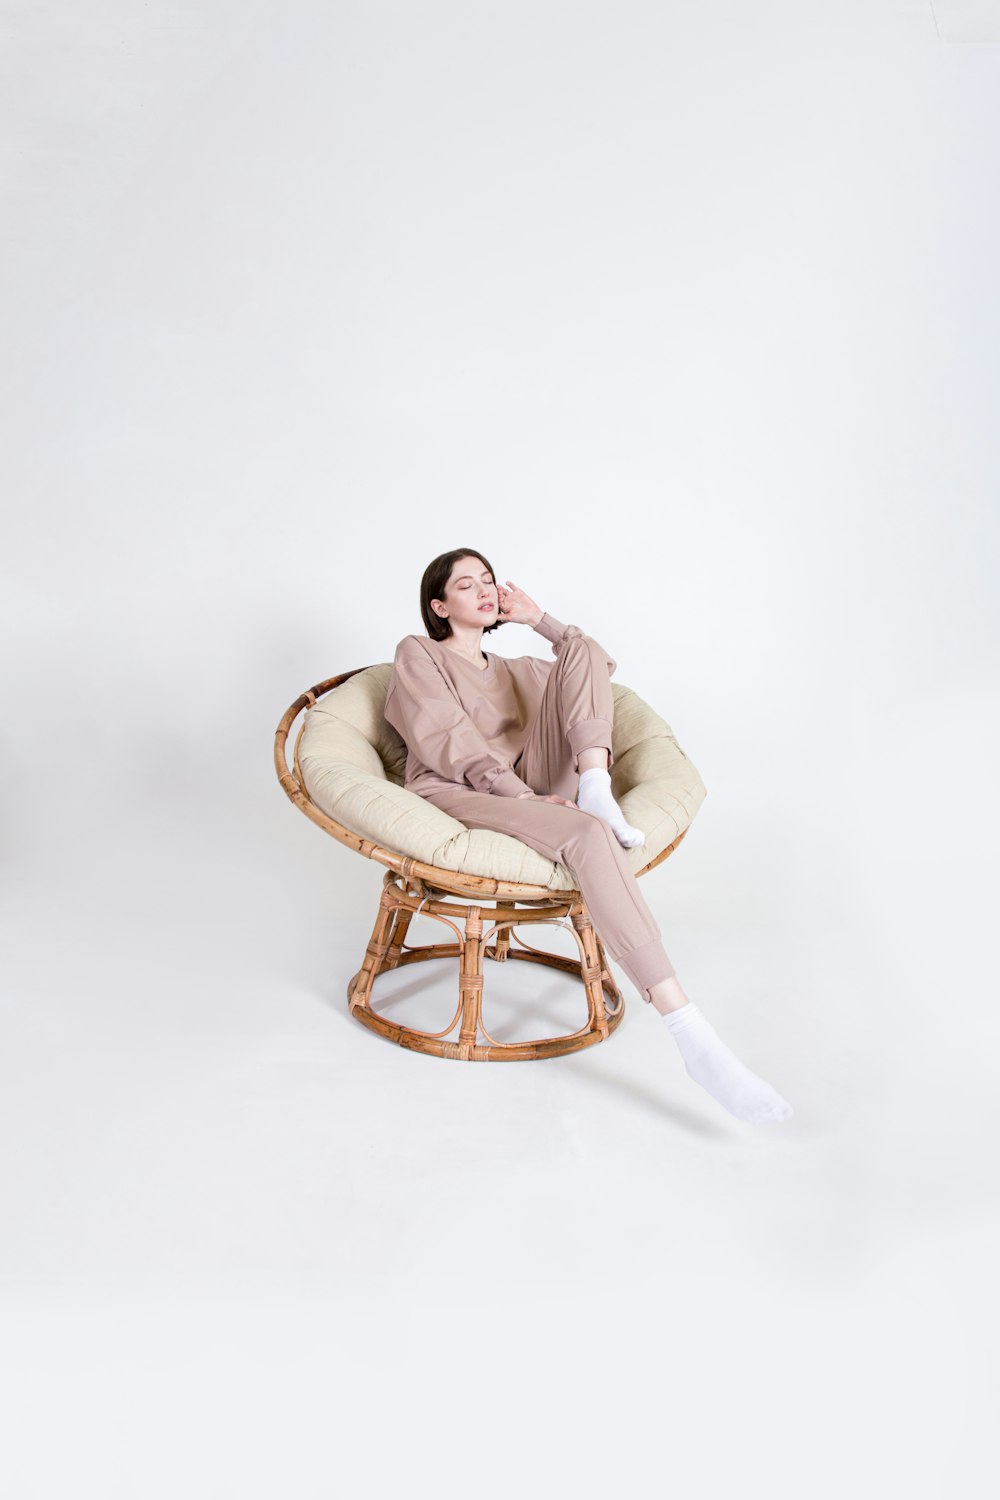 Une femme assise sur une chaise, les jambes croisées